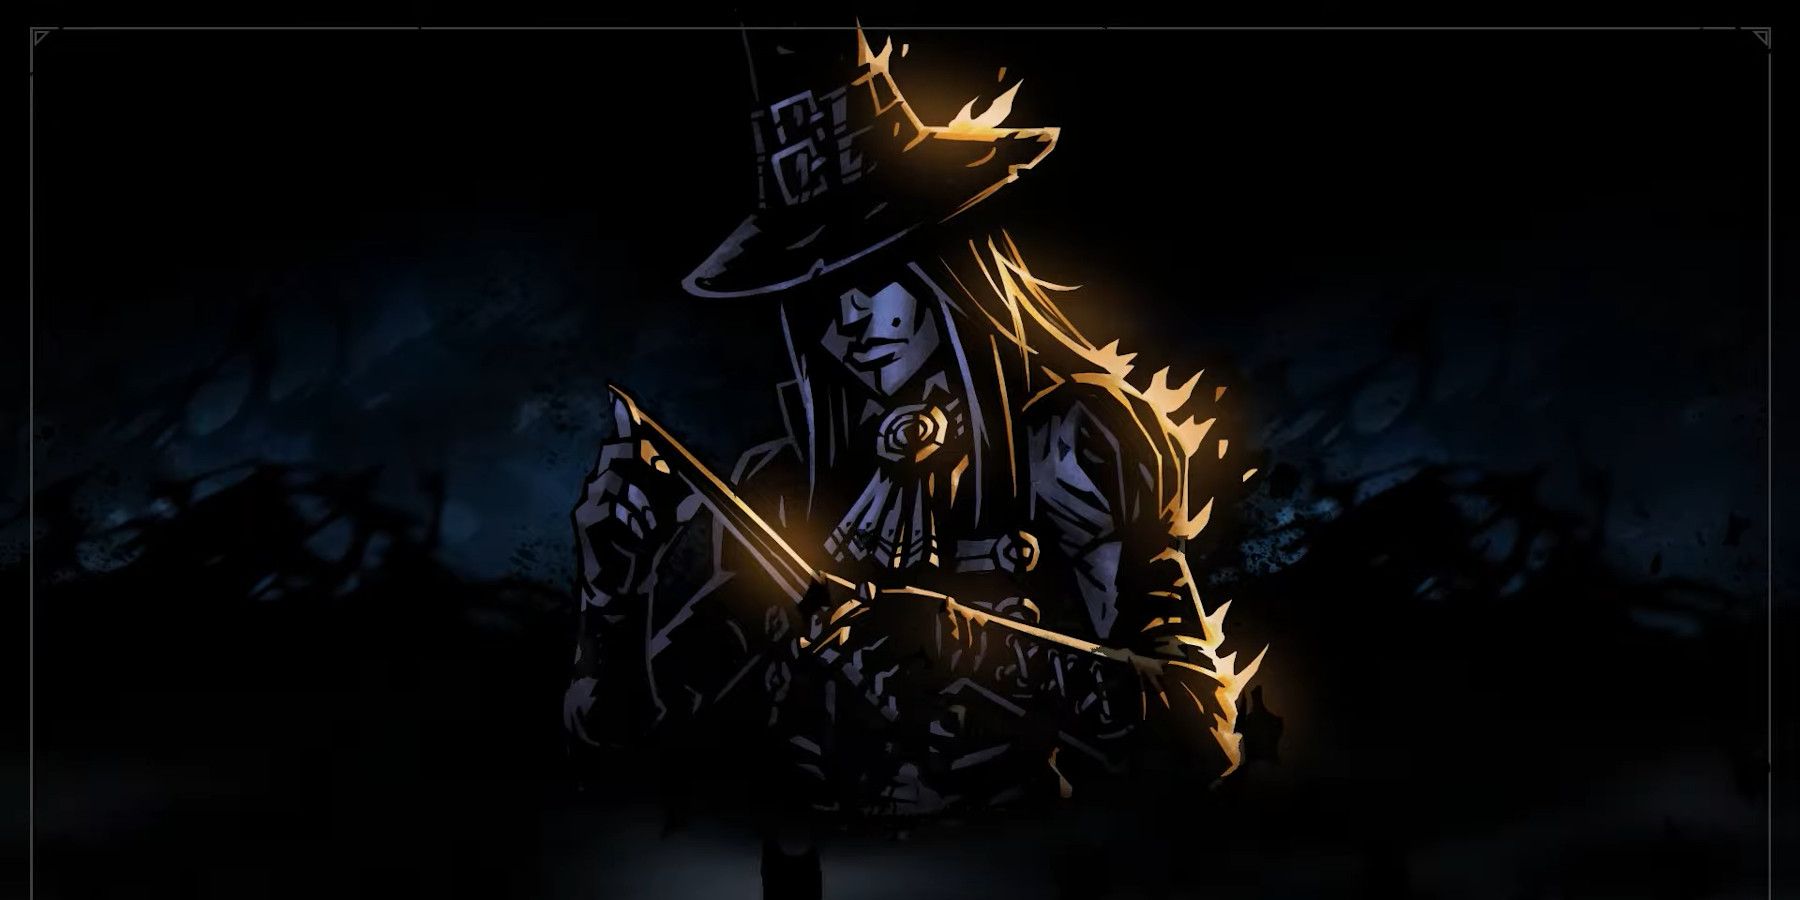 grave robber 2 sprites darkest dungeon